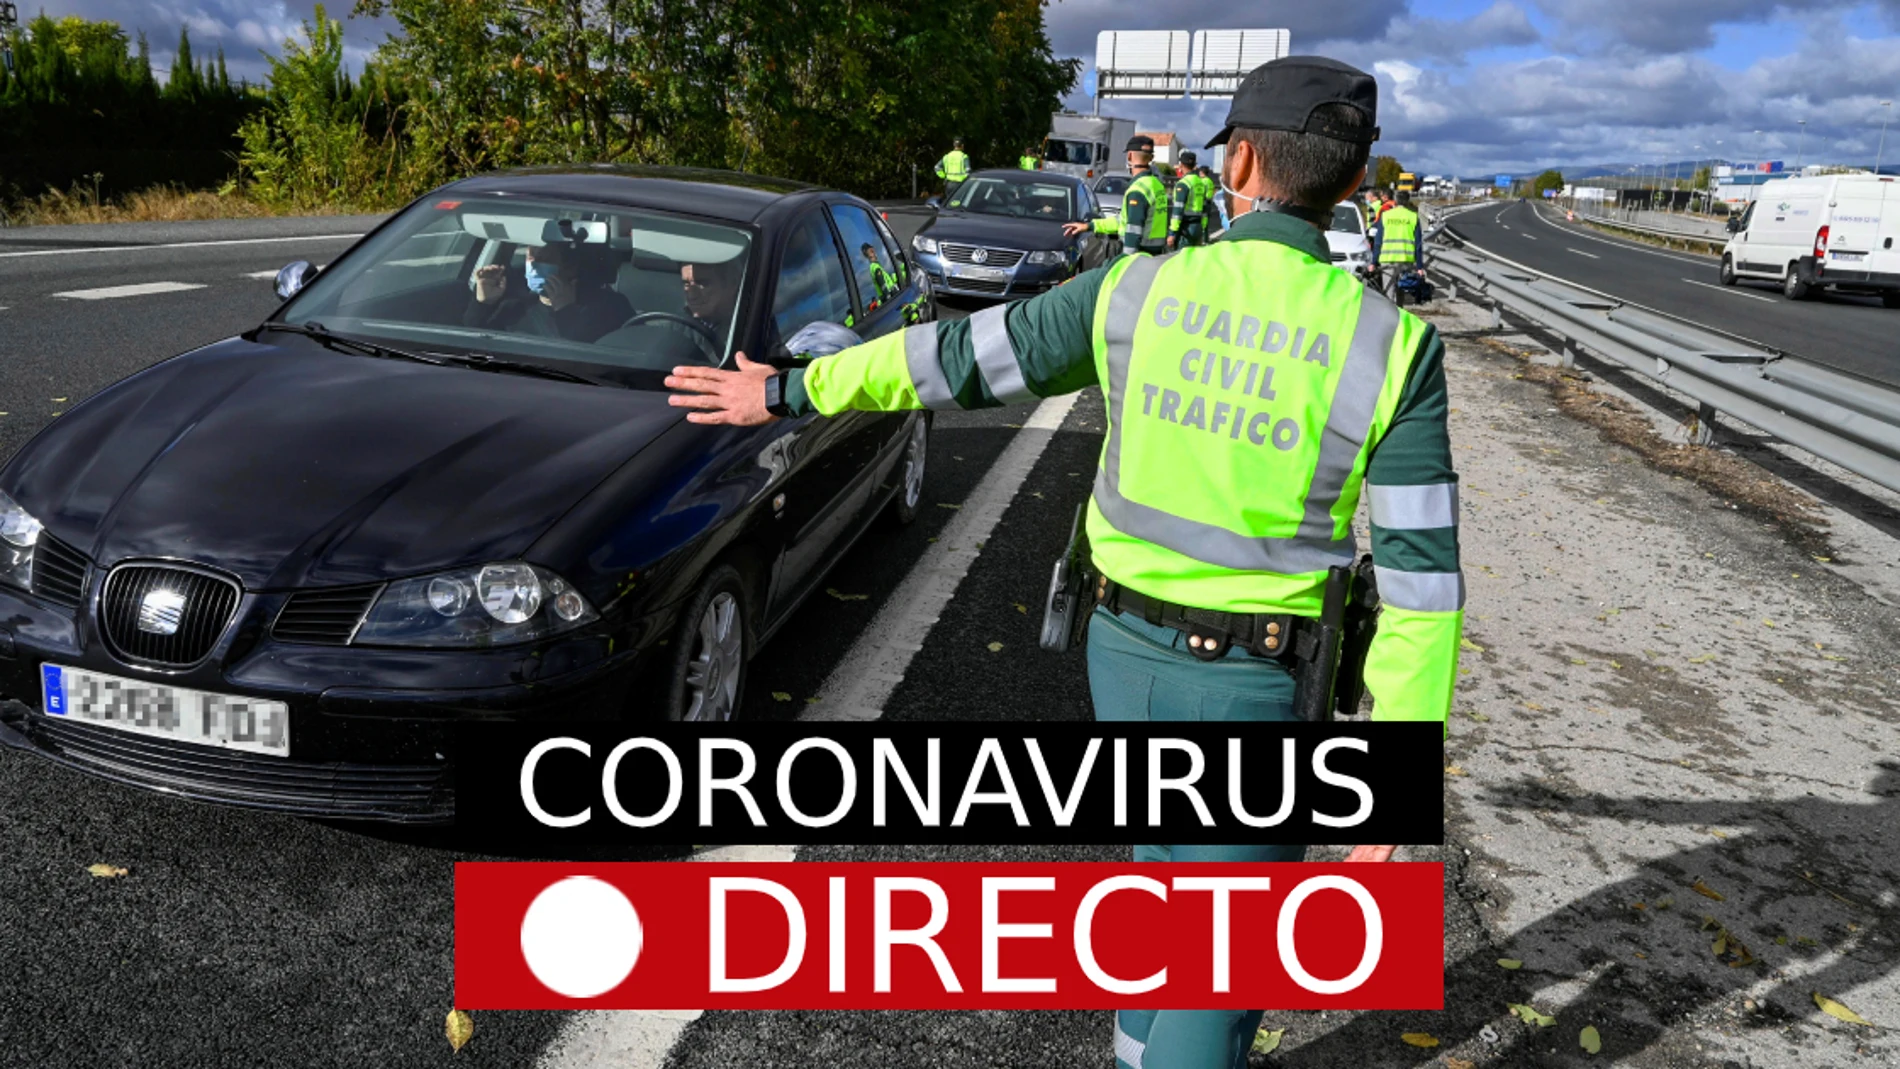 Coronavirus en España y Madrid: Última hora por el confinamiento, estado de alarma y toque de queda por COVID-19 EN DIRECTO